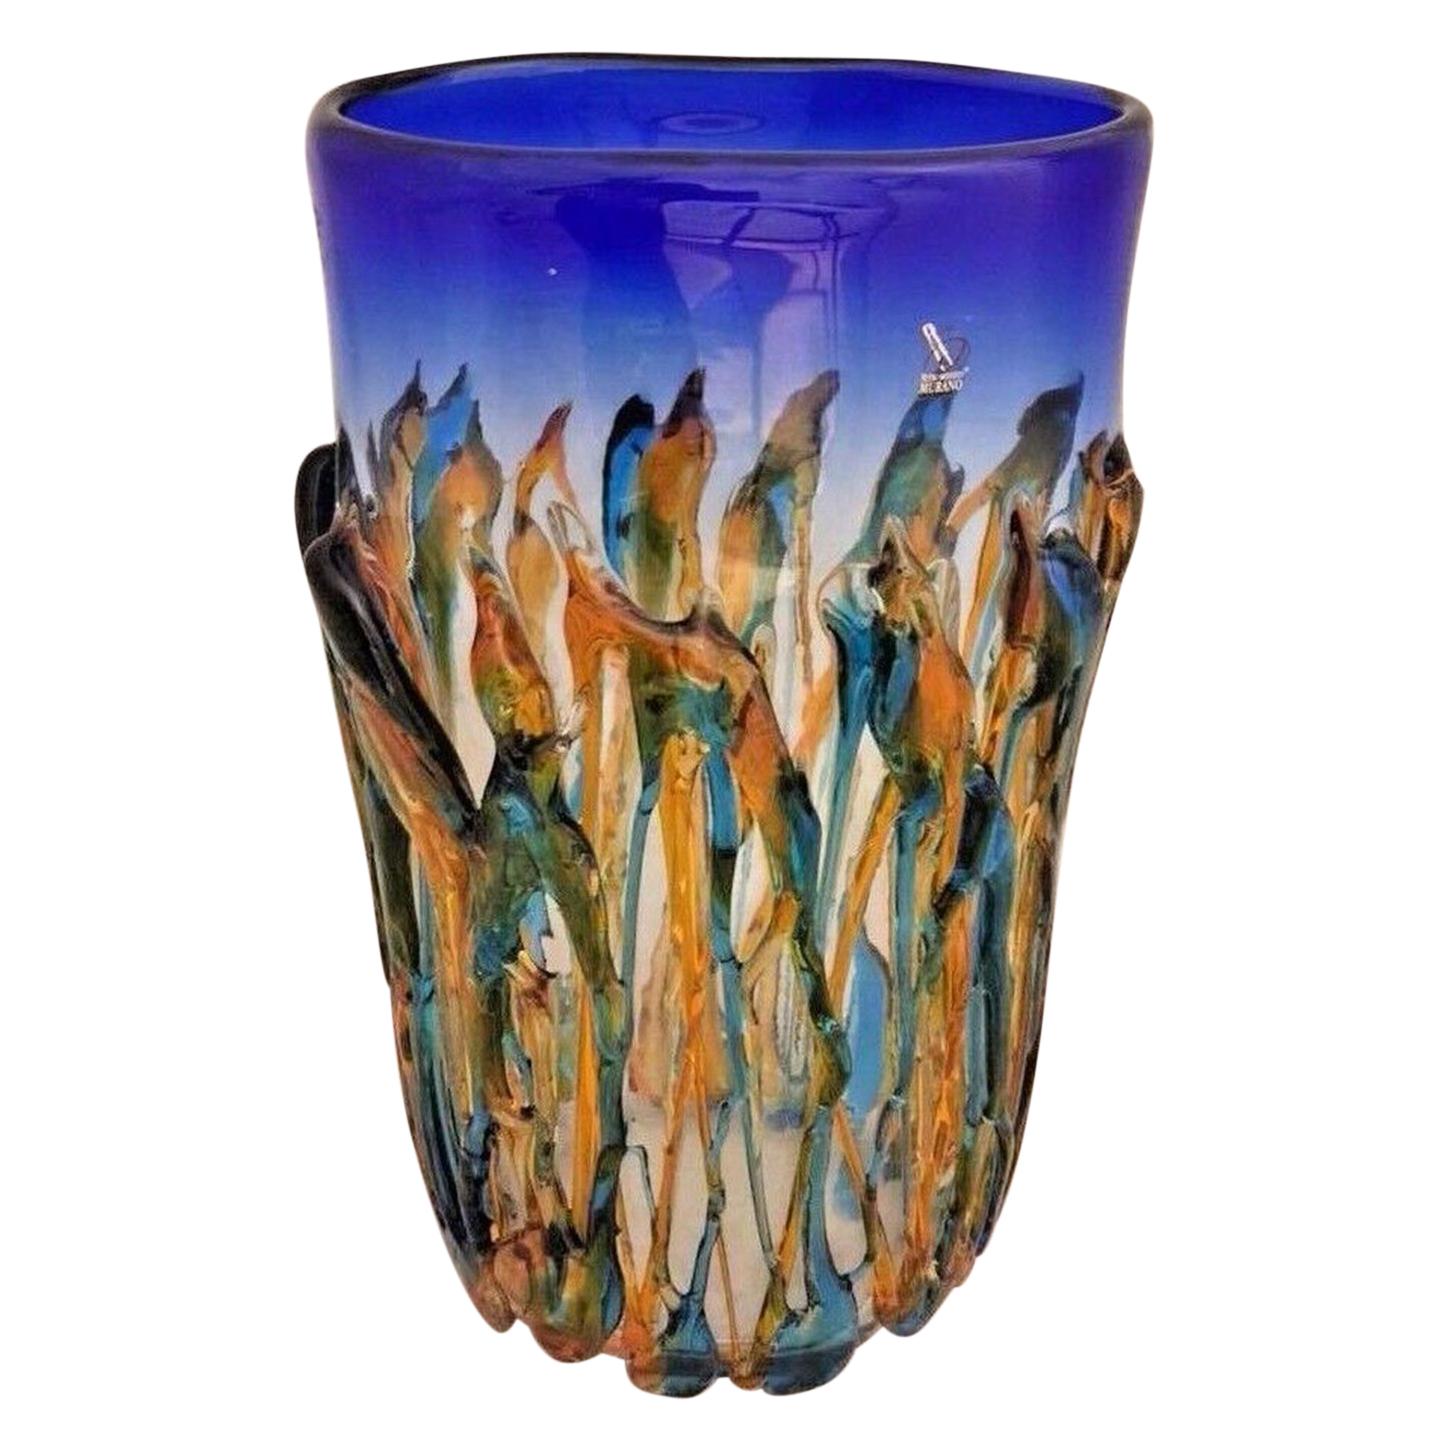 Grand vase d'art abstrait en verre de Murano Oceanos multicolore signé Vetro Artistico